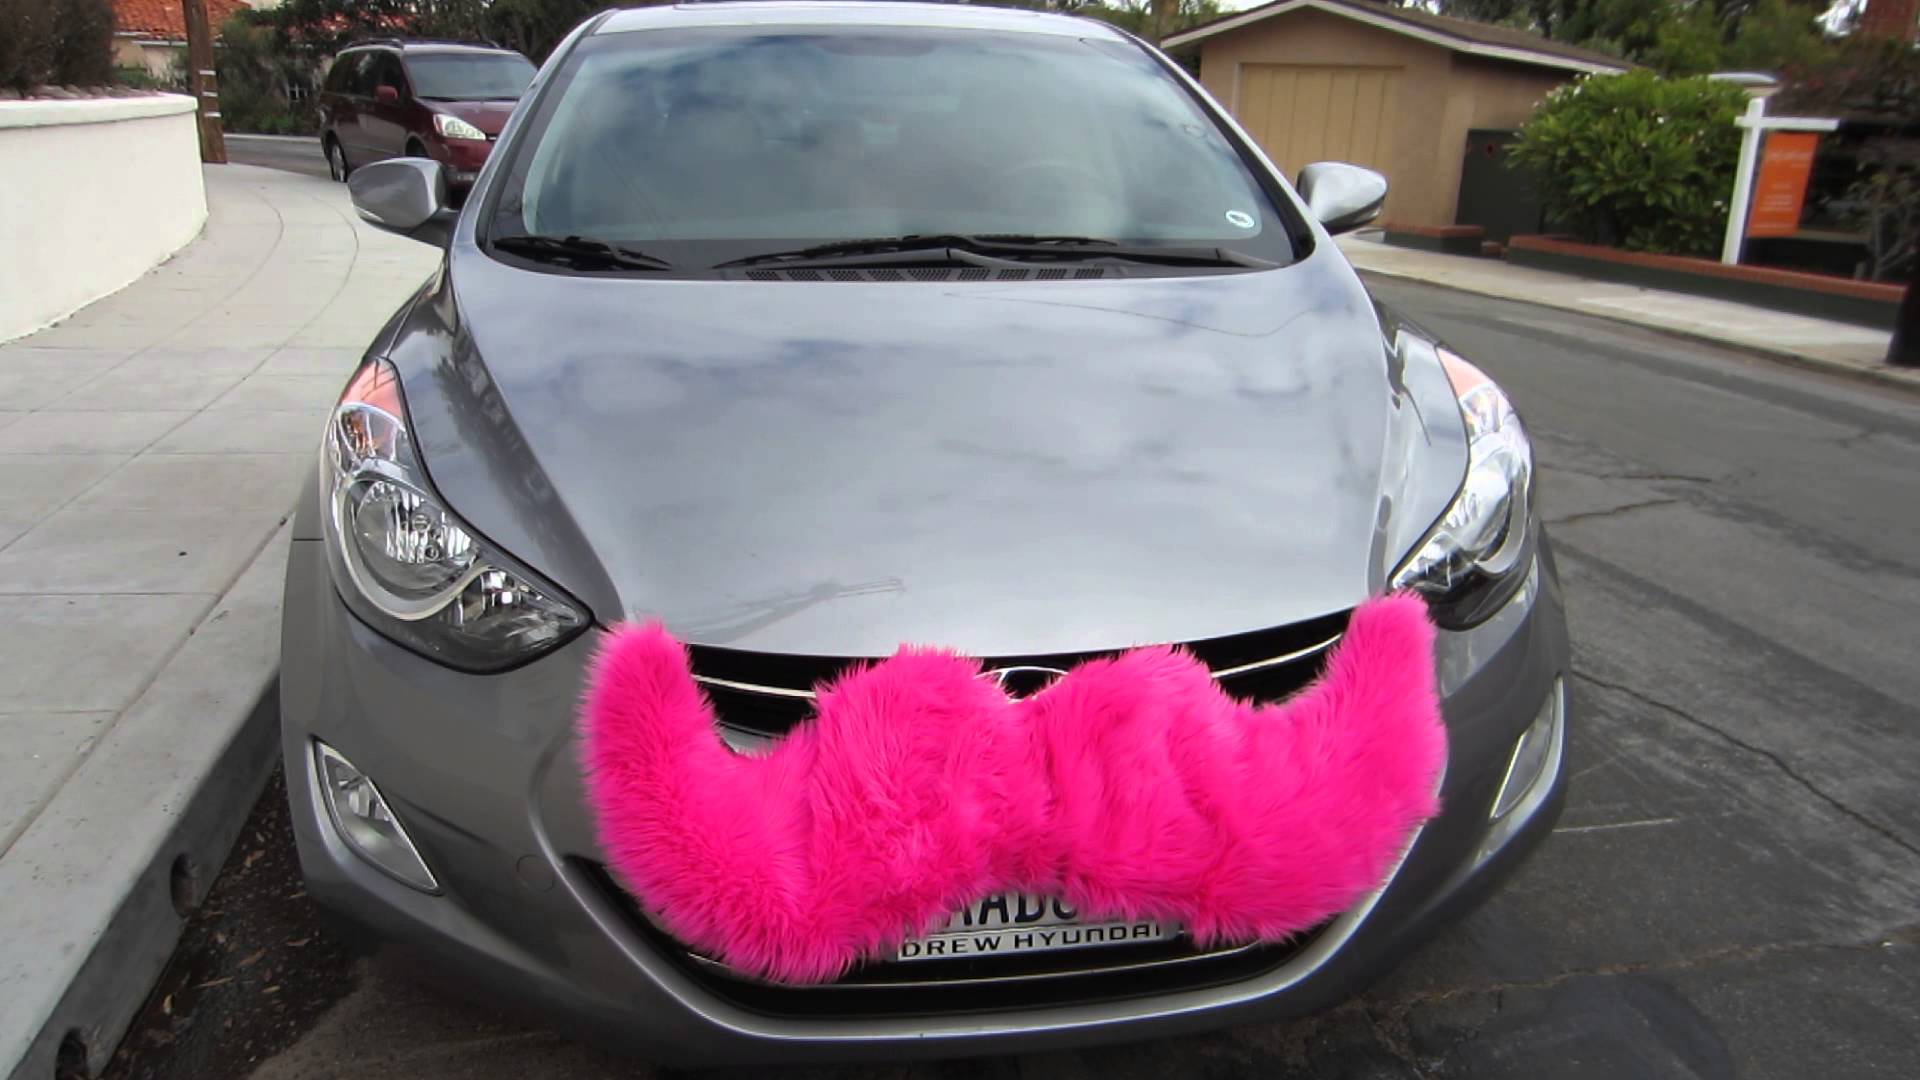 Pink Mustache is it?!